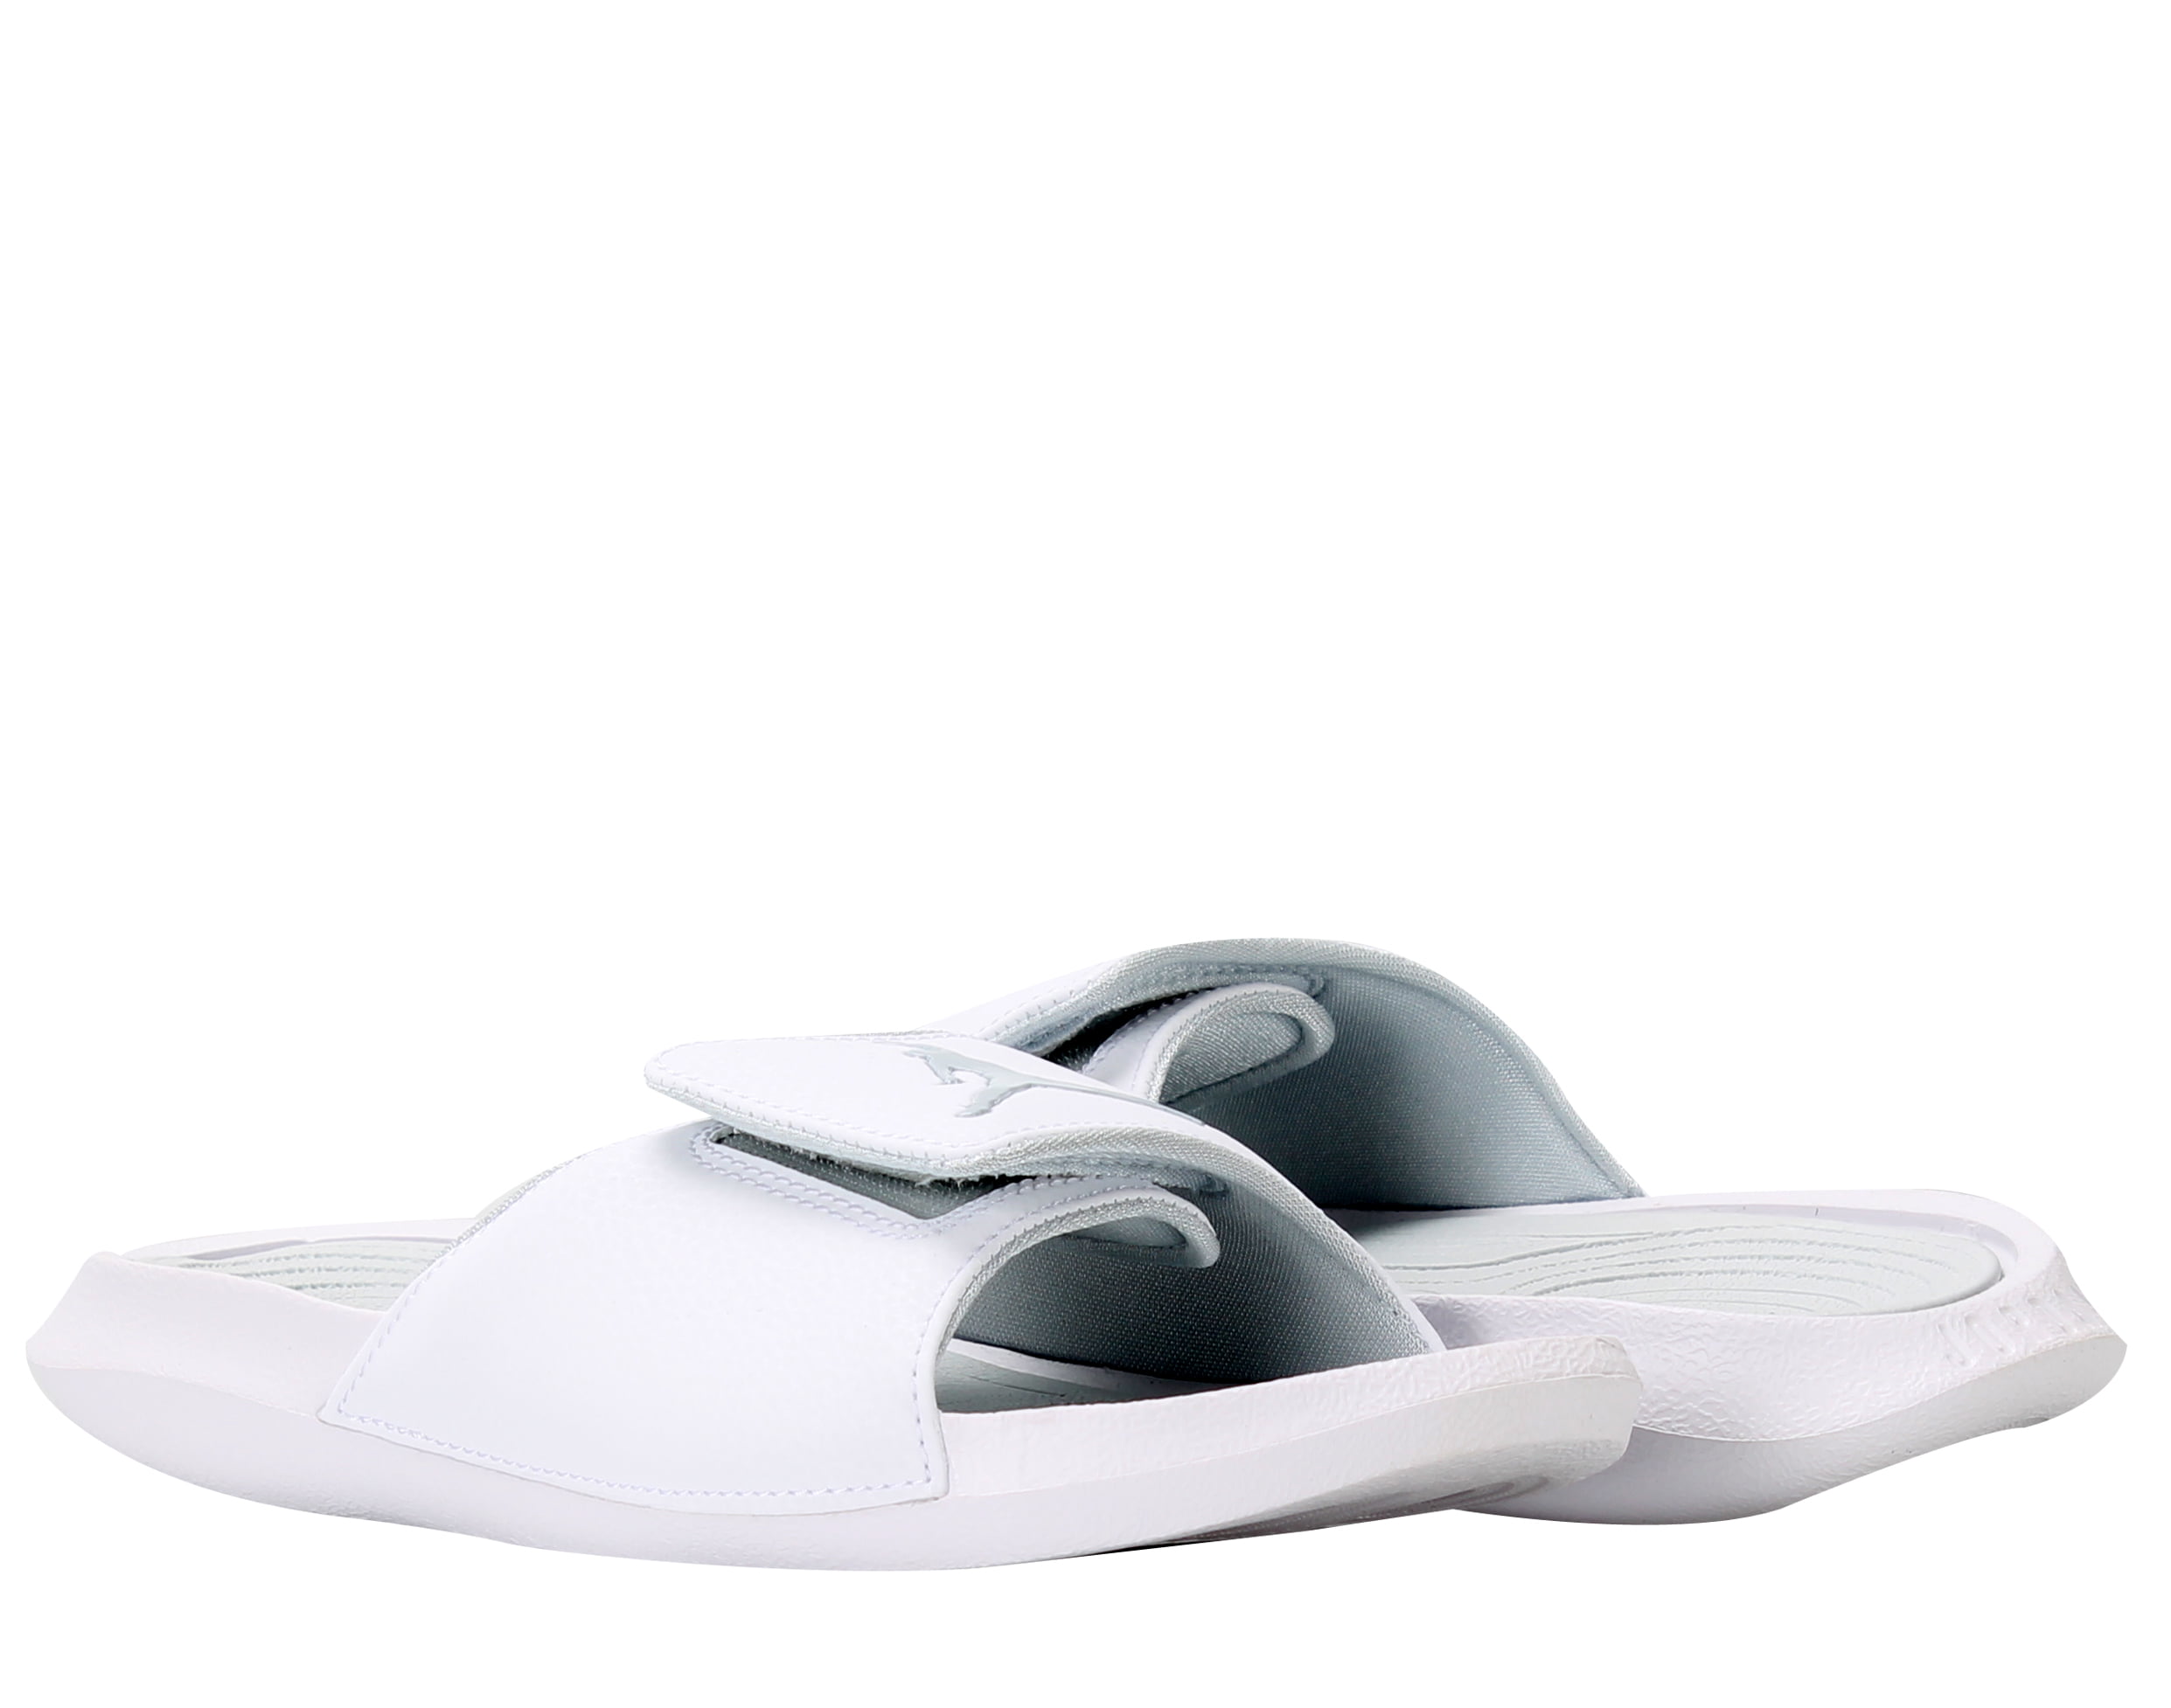 Nike Air Jordan Hydro 6 White/Silver-Grey Men's Slides 881473-120 Size ...